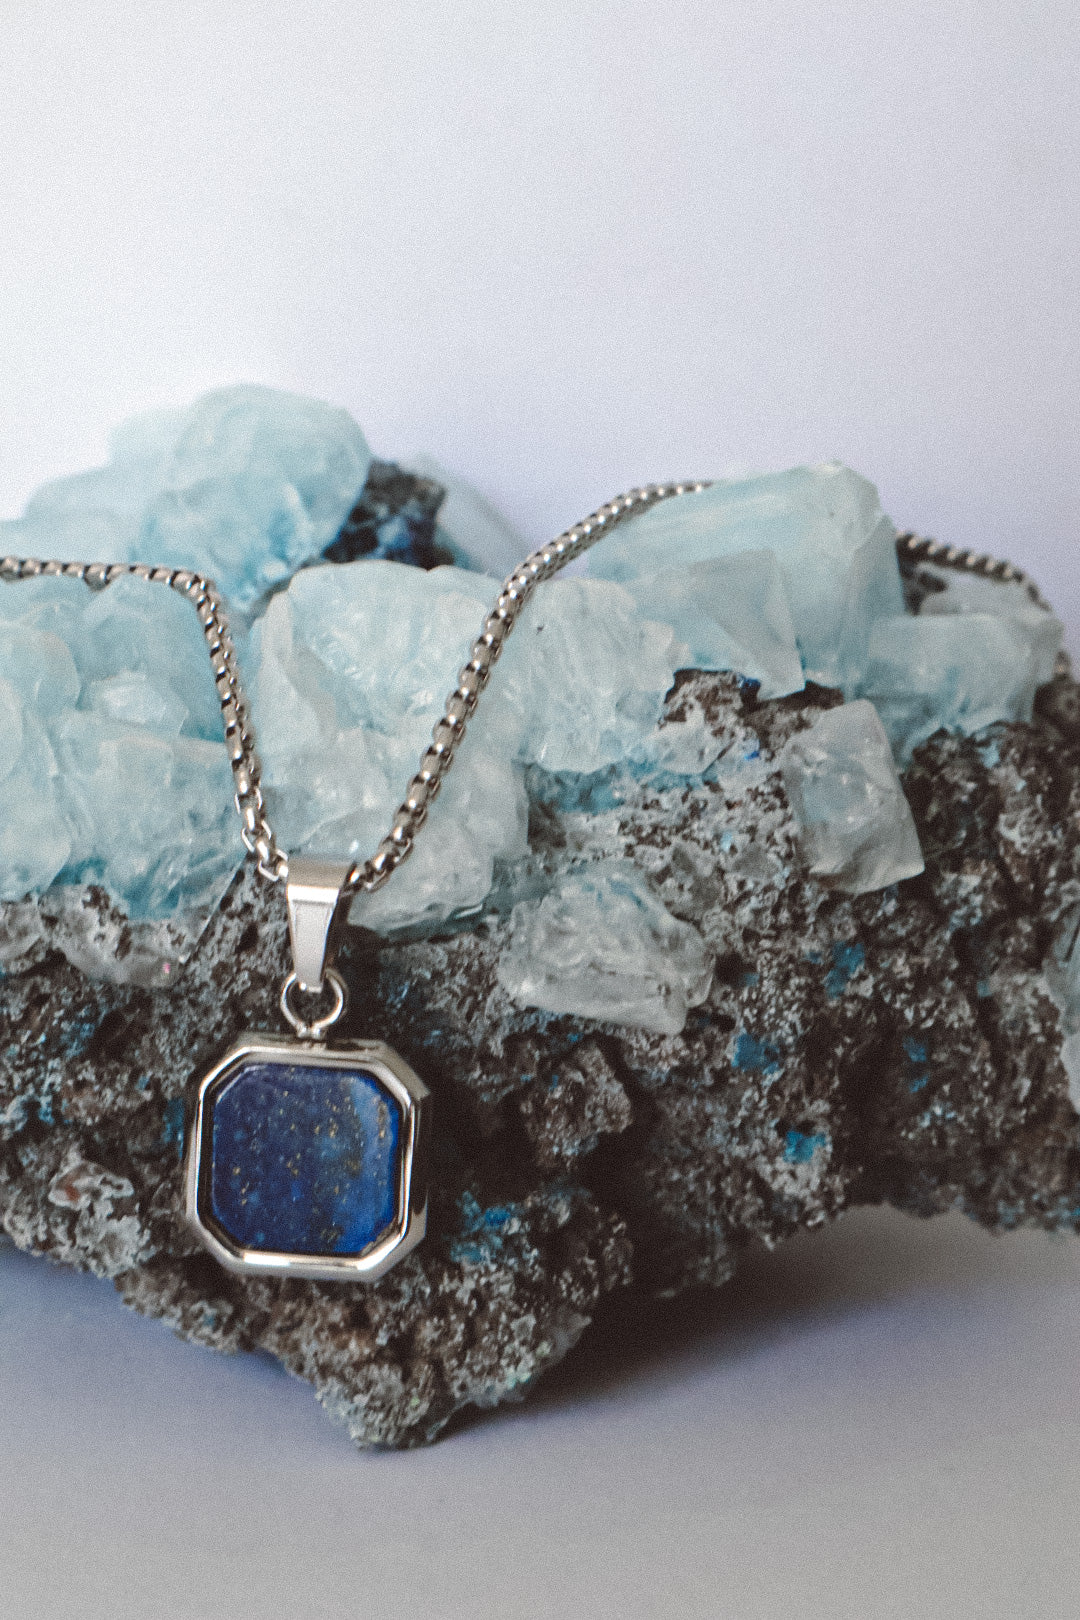 Lapis Lazuli Pendant Chain Necklace - Silver